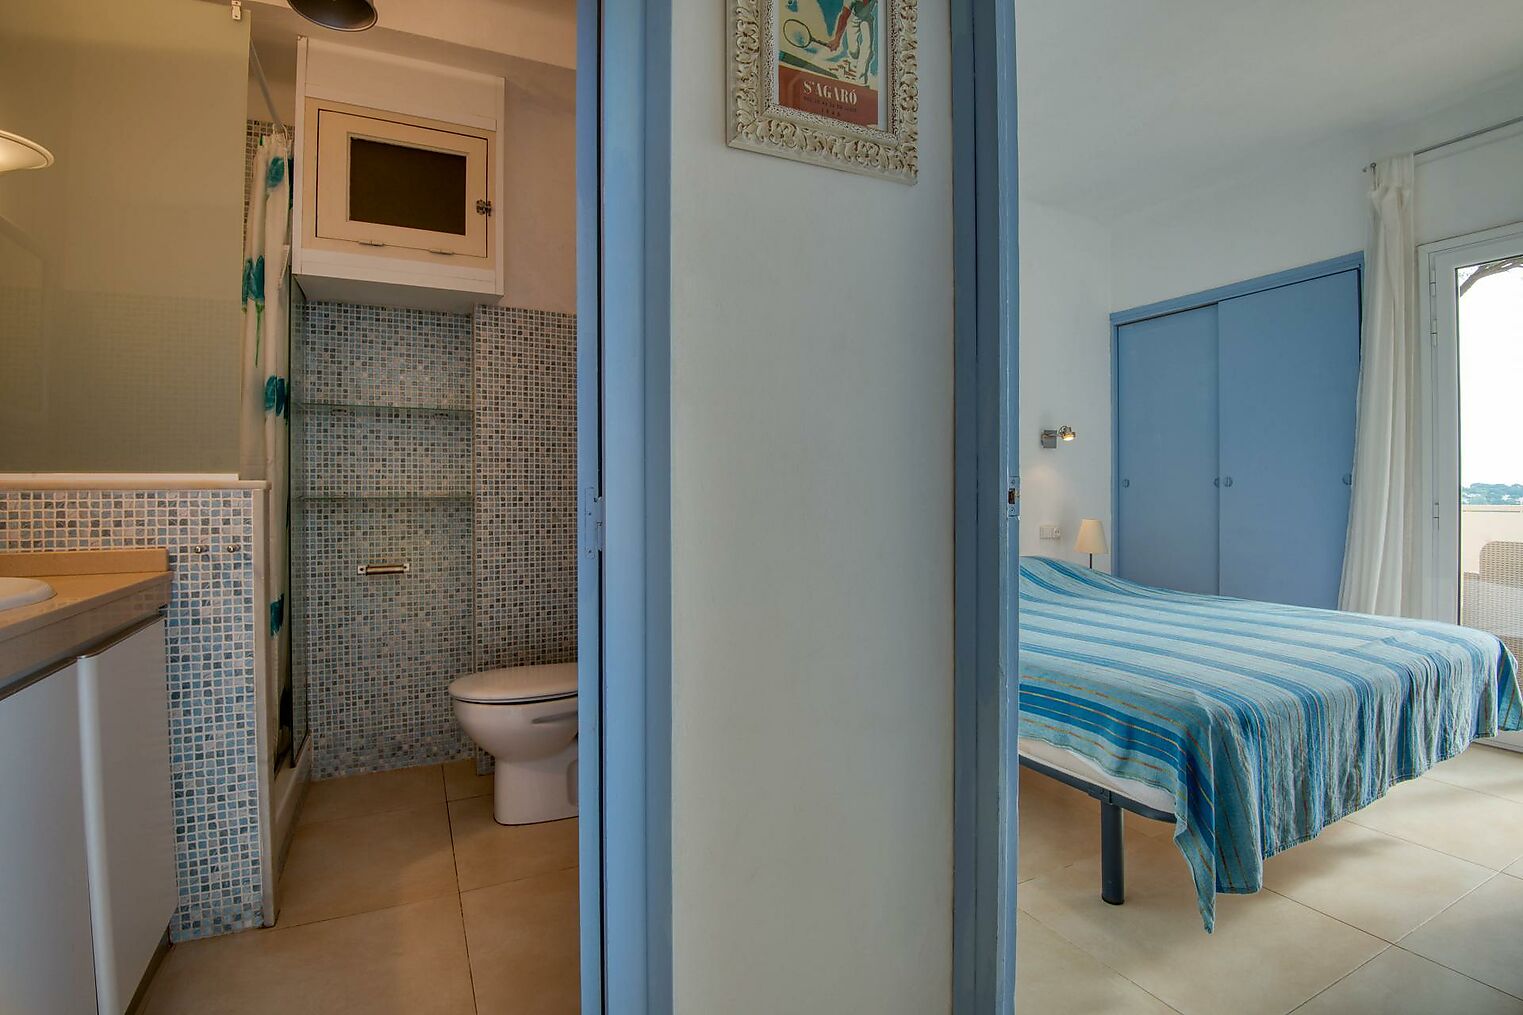 Appartement avec vue mer à Sant Feliu de Guíxols